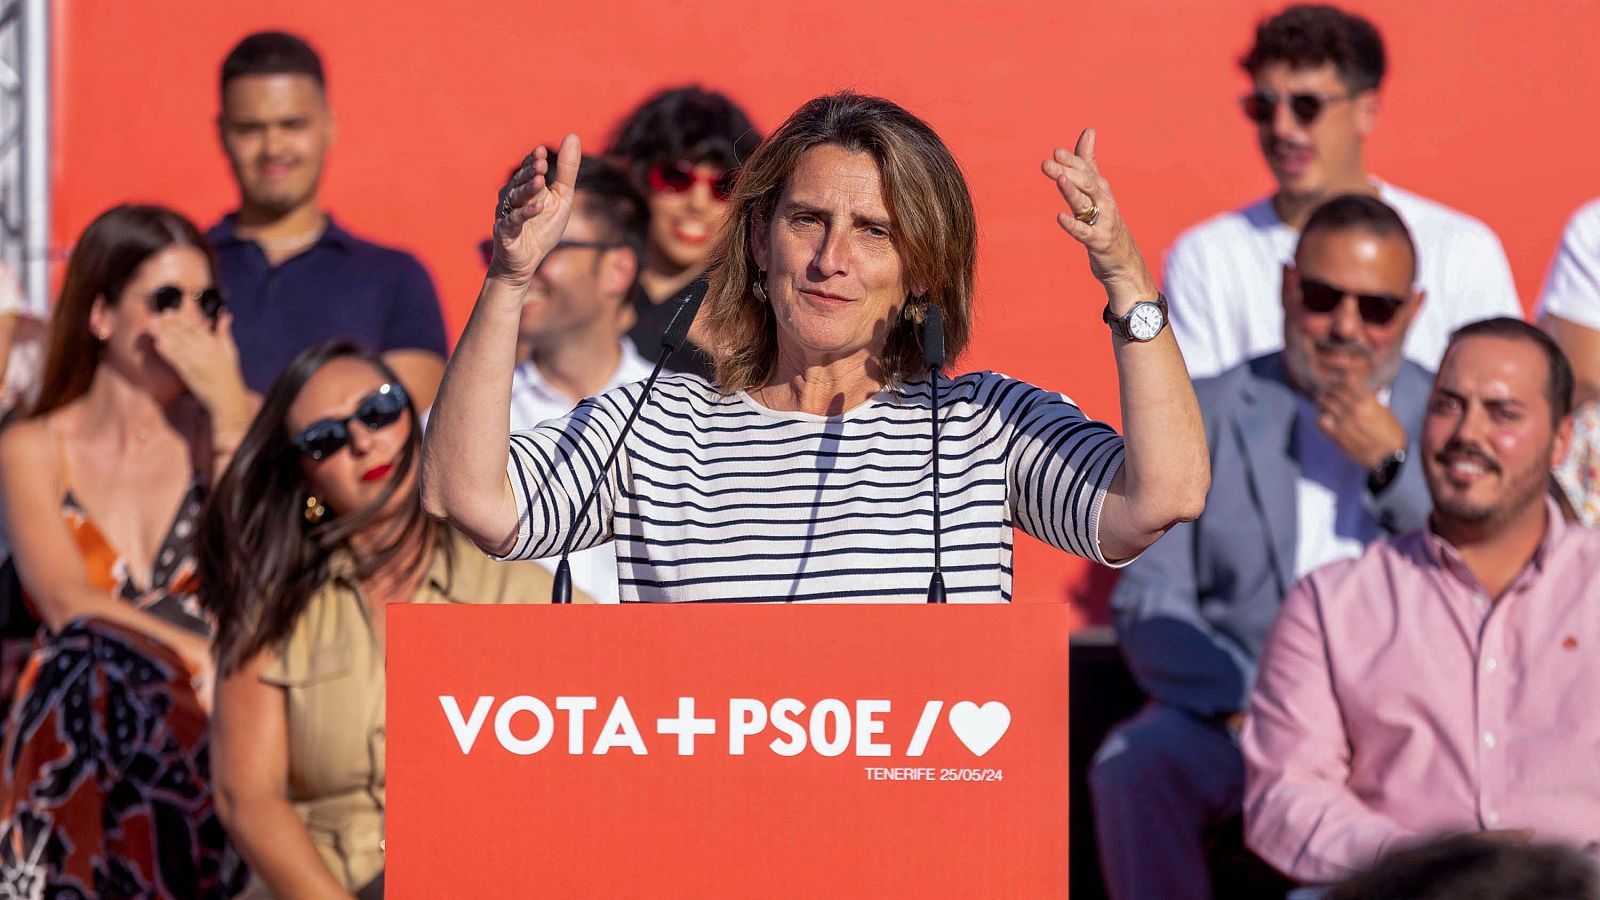 Elecciones europeas: El PSOE carga contra un PP "sinvergüenza" que ha pasado de "normalizar a la ultraderecha" a "mimetizarse" con ella